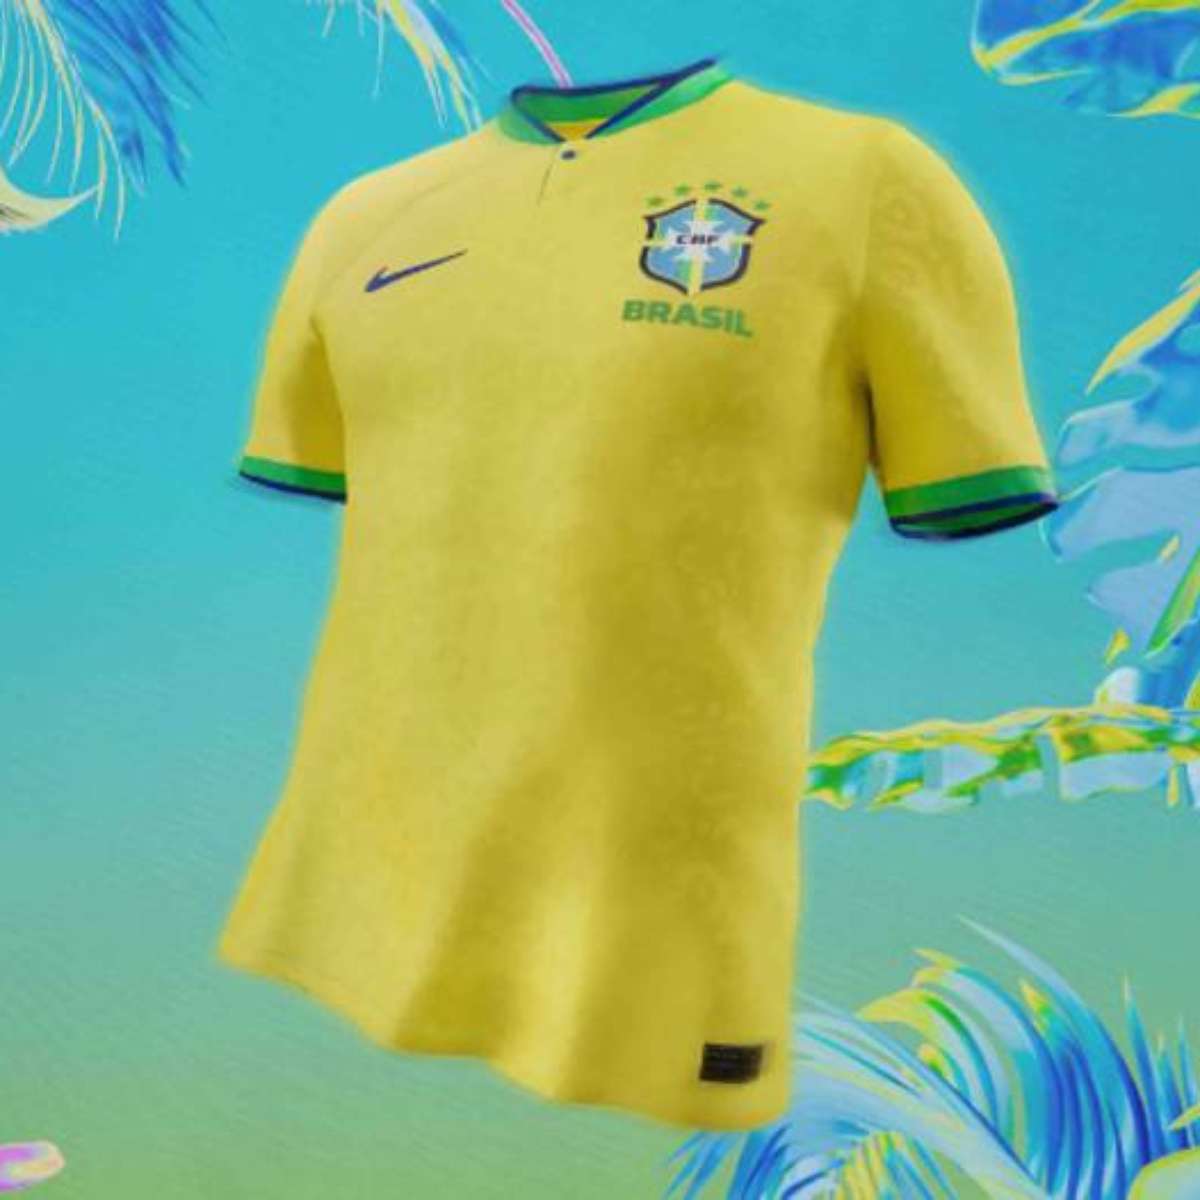 Camisa oficial da Seleção Brasileira esgotou e modelo pirata faz a